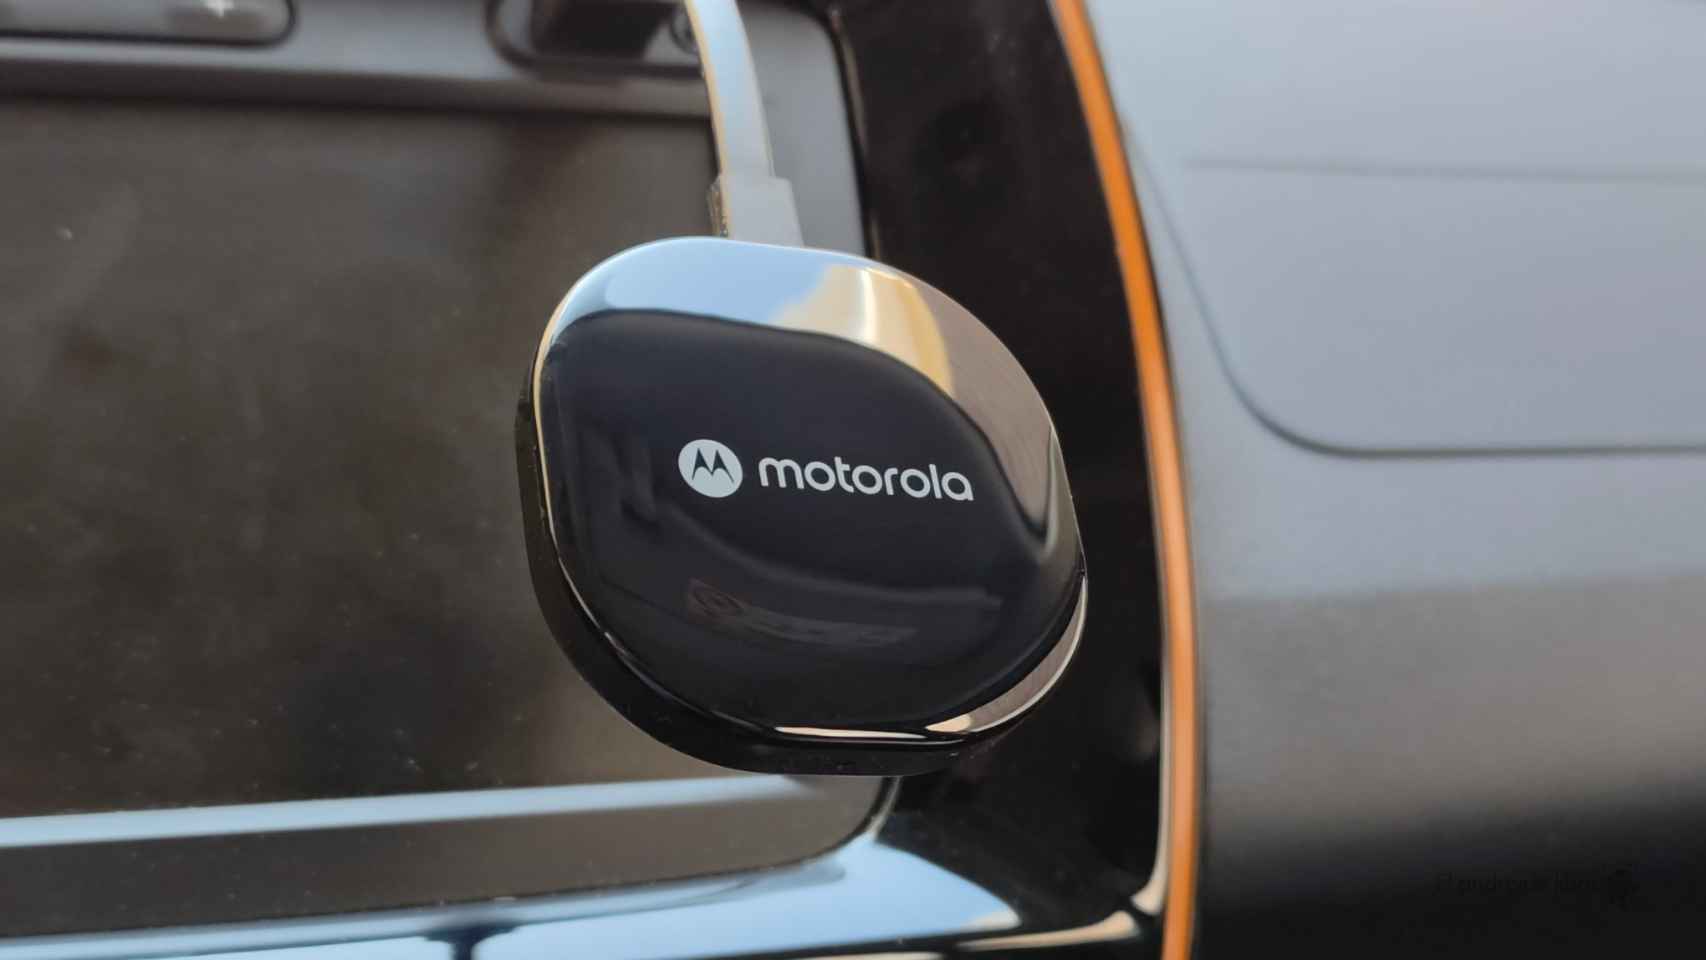 Imagen del adaptador Motorola MA1 para conexión inalámbrica con Android Auto en el coche